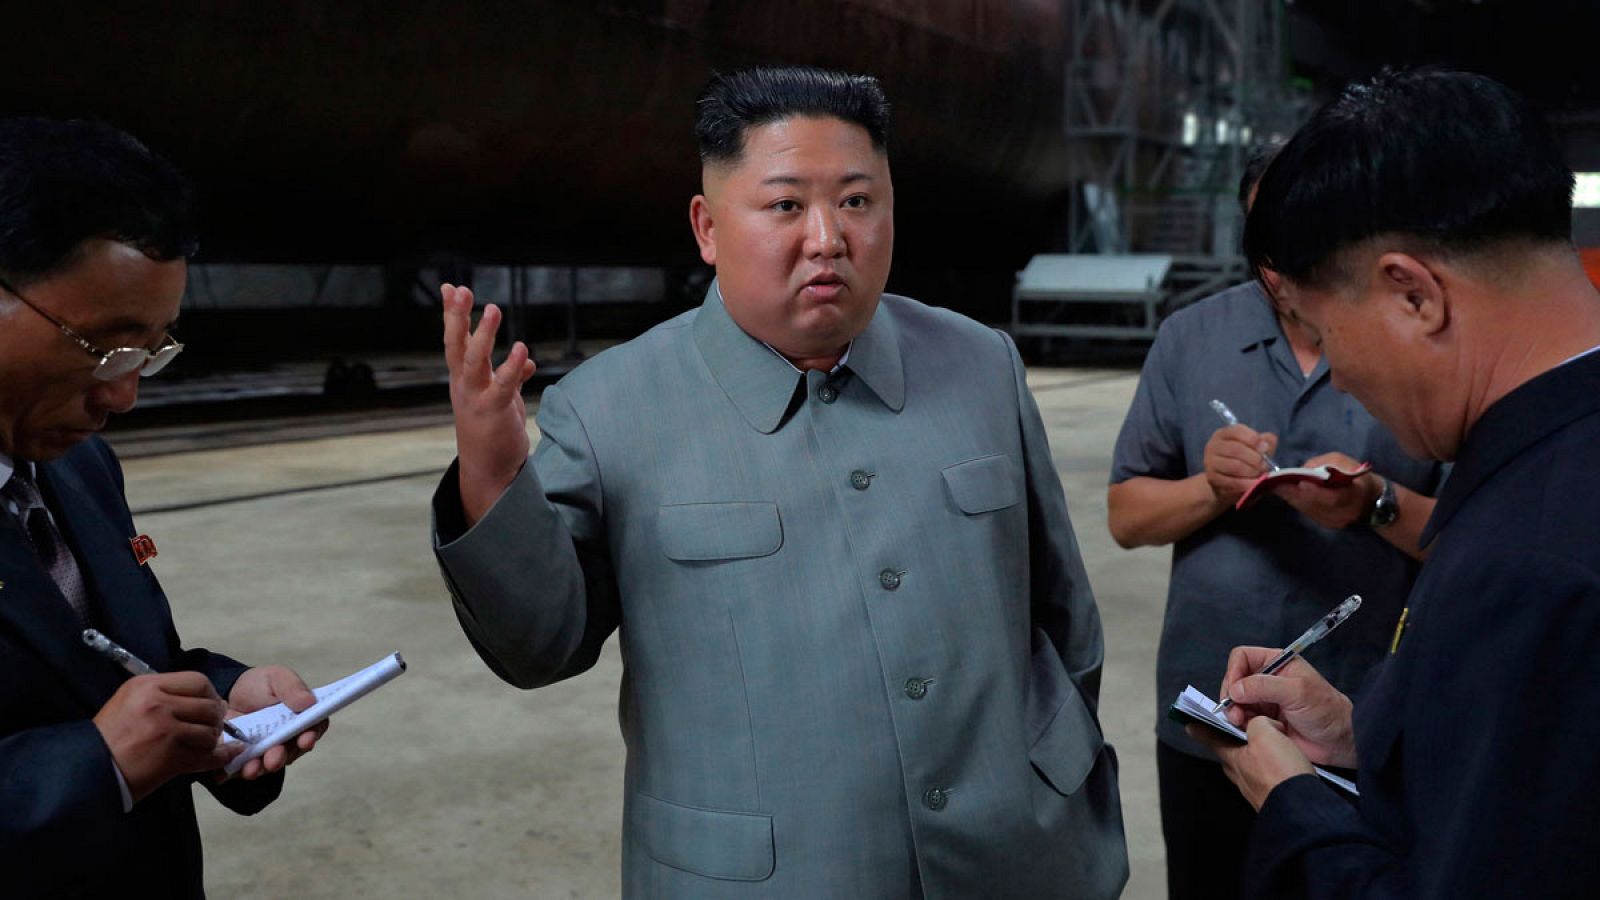 Foto de archivo del líder norcoreano Kim Jong-un inspeccionando un submarino.